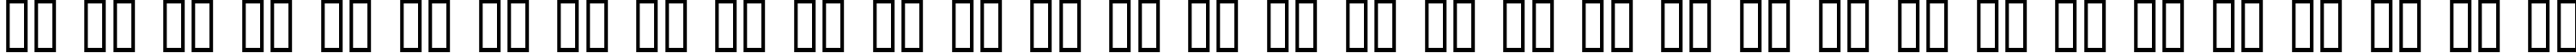 Пример написания русского алфавита шрифтом Incantation